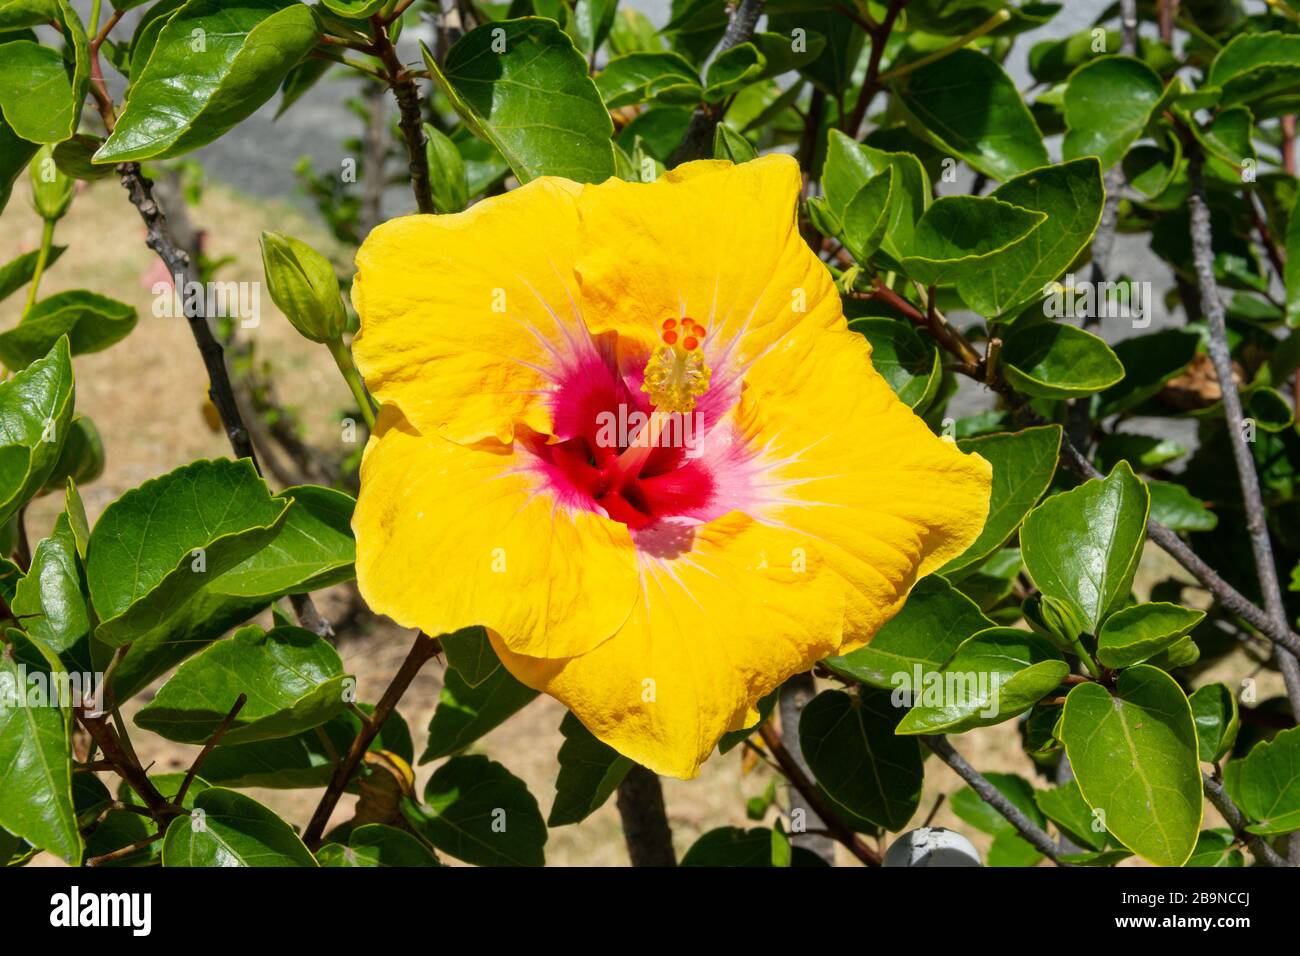 Yellow hibiscus flower, Tamaki Drive, Kohimarama, Auckland, New Zealand Stock Photo